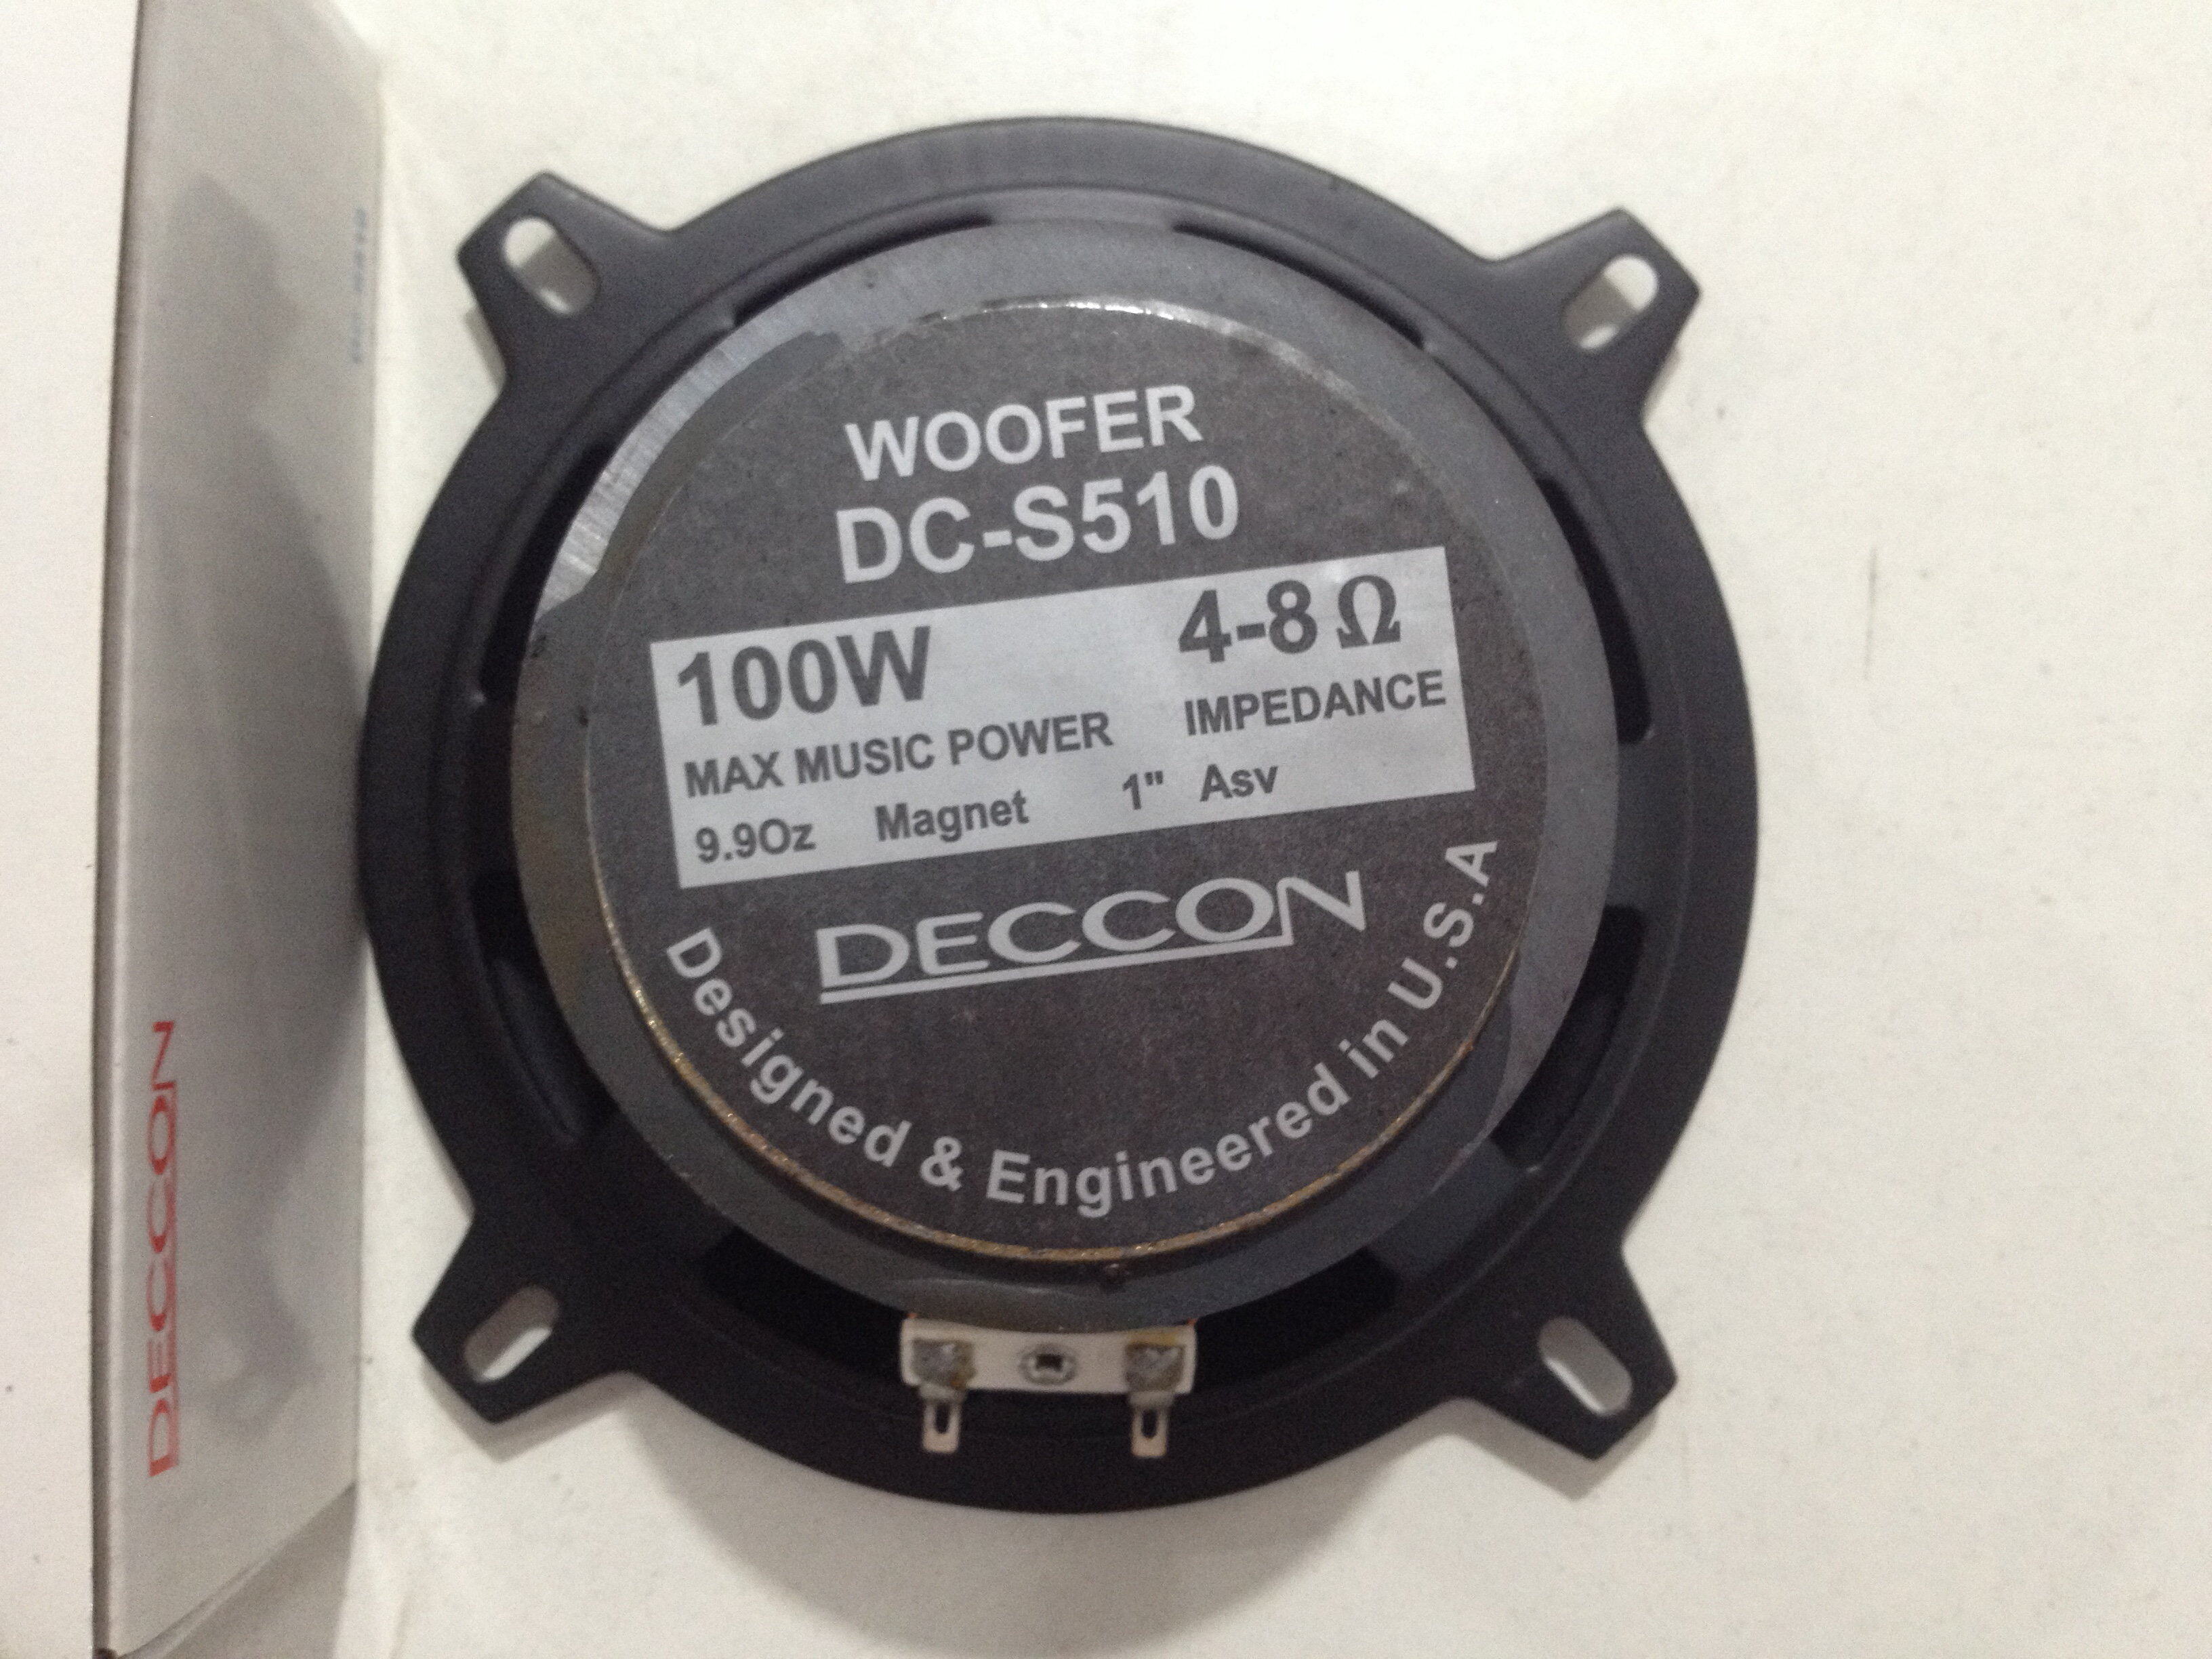 ดอกลำโพงวูฟเฟอร์ ขนาด 5 นิ้ว DECCON DC-S510 Frequency Range 82 Hz-10 Khz 100W 4-8 OHM Woofer